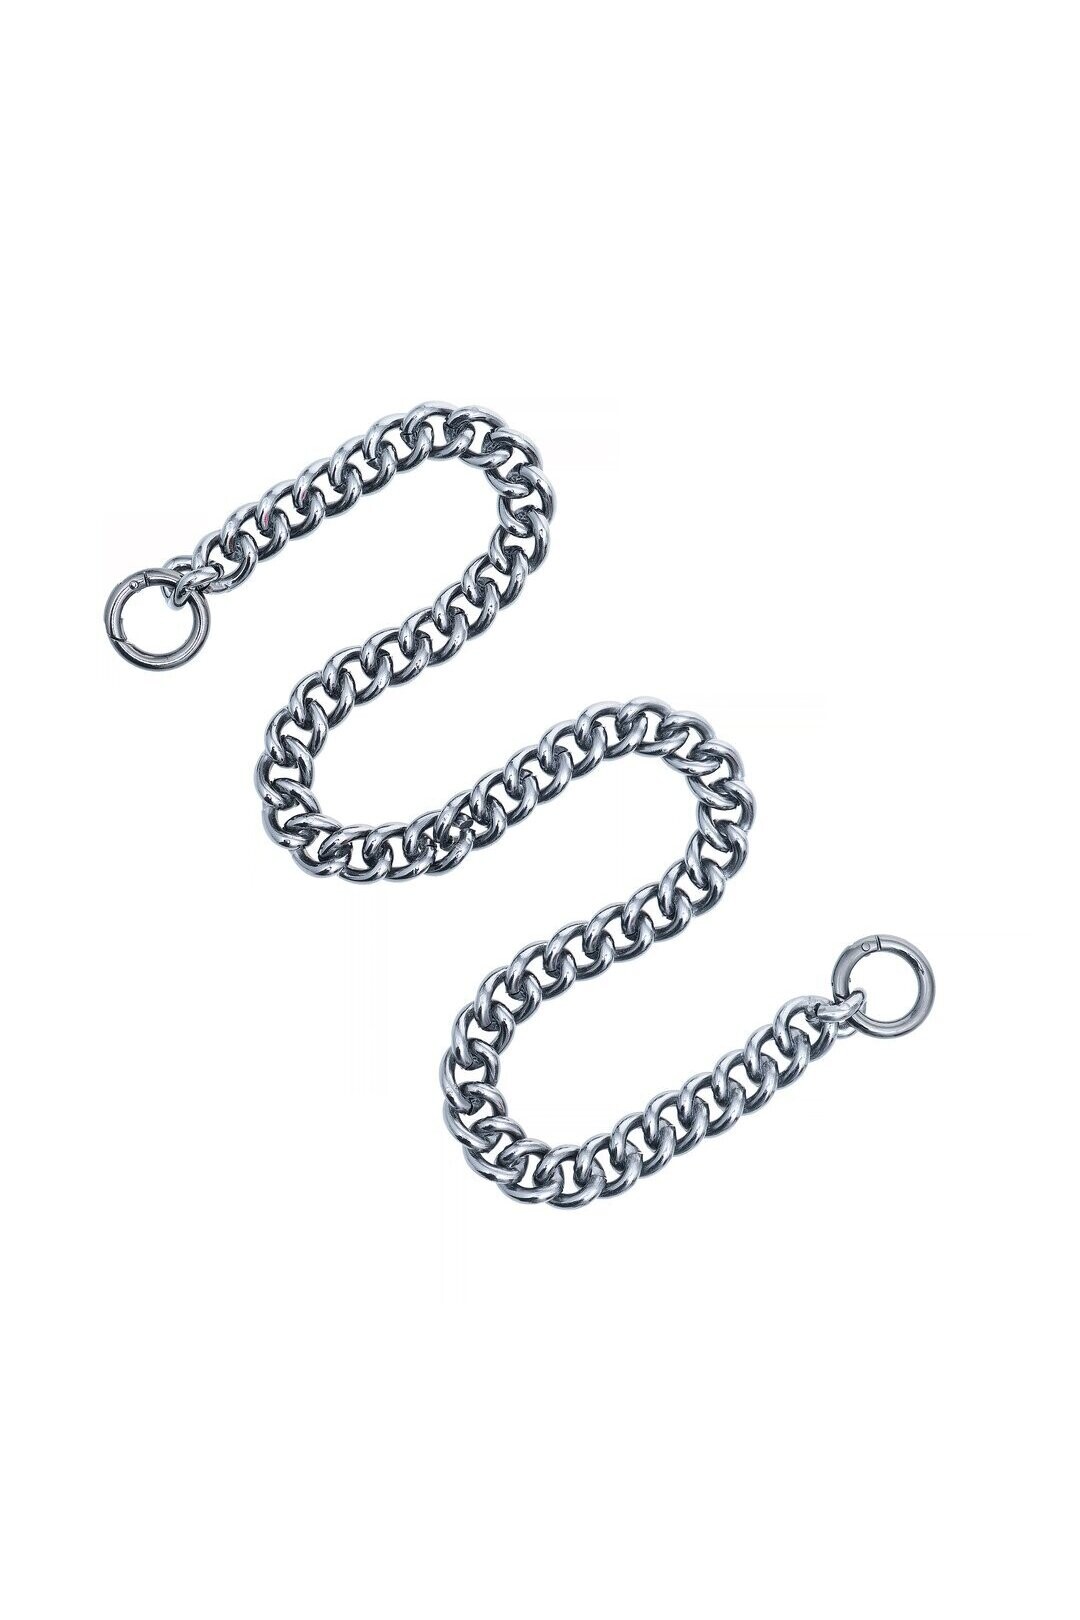 Chain Strap 90cm- Silver